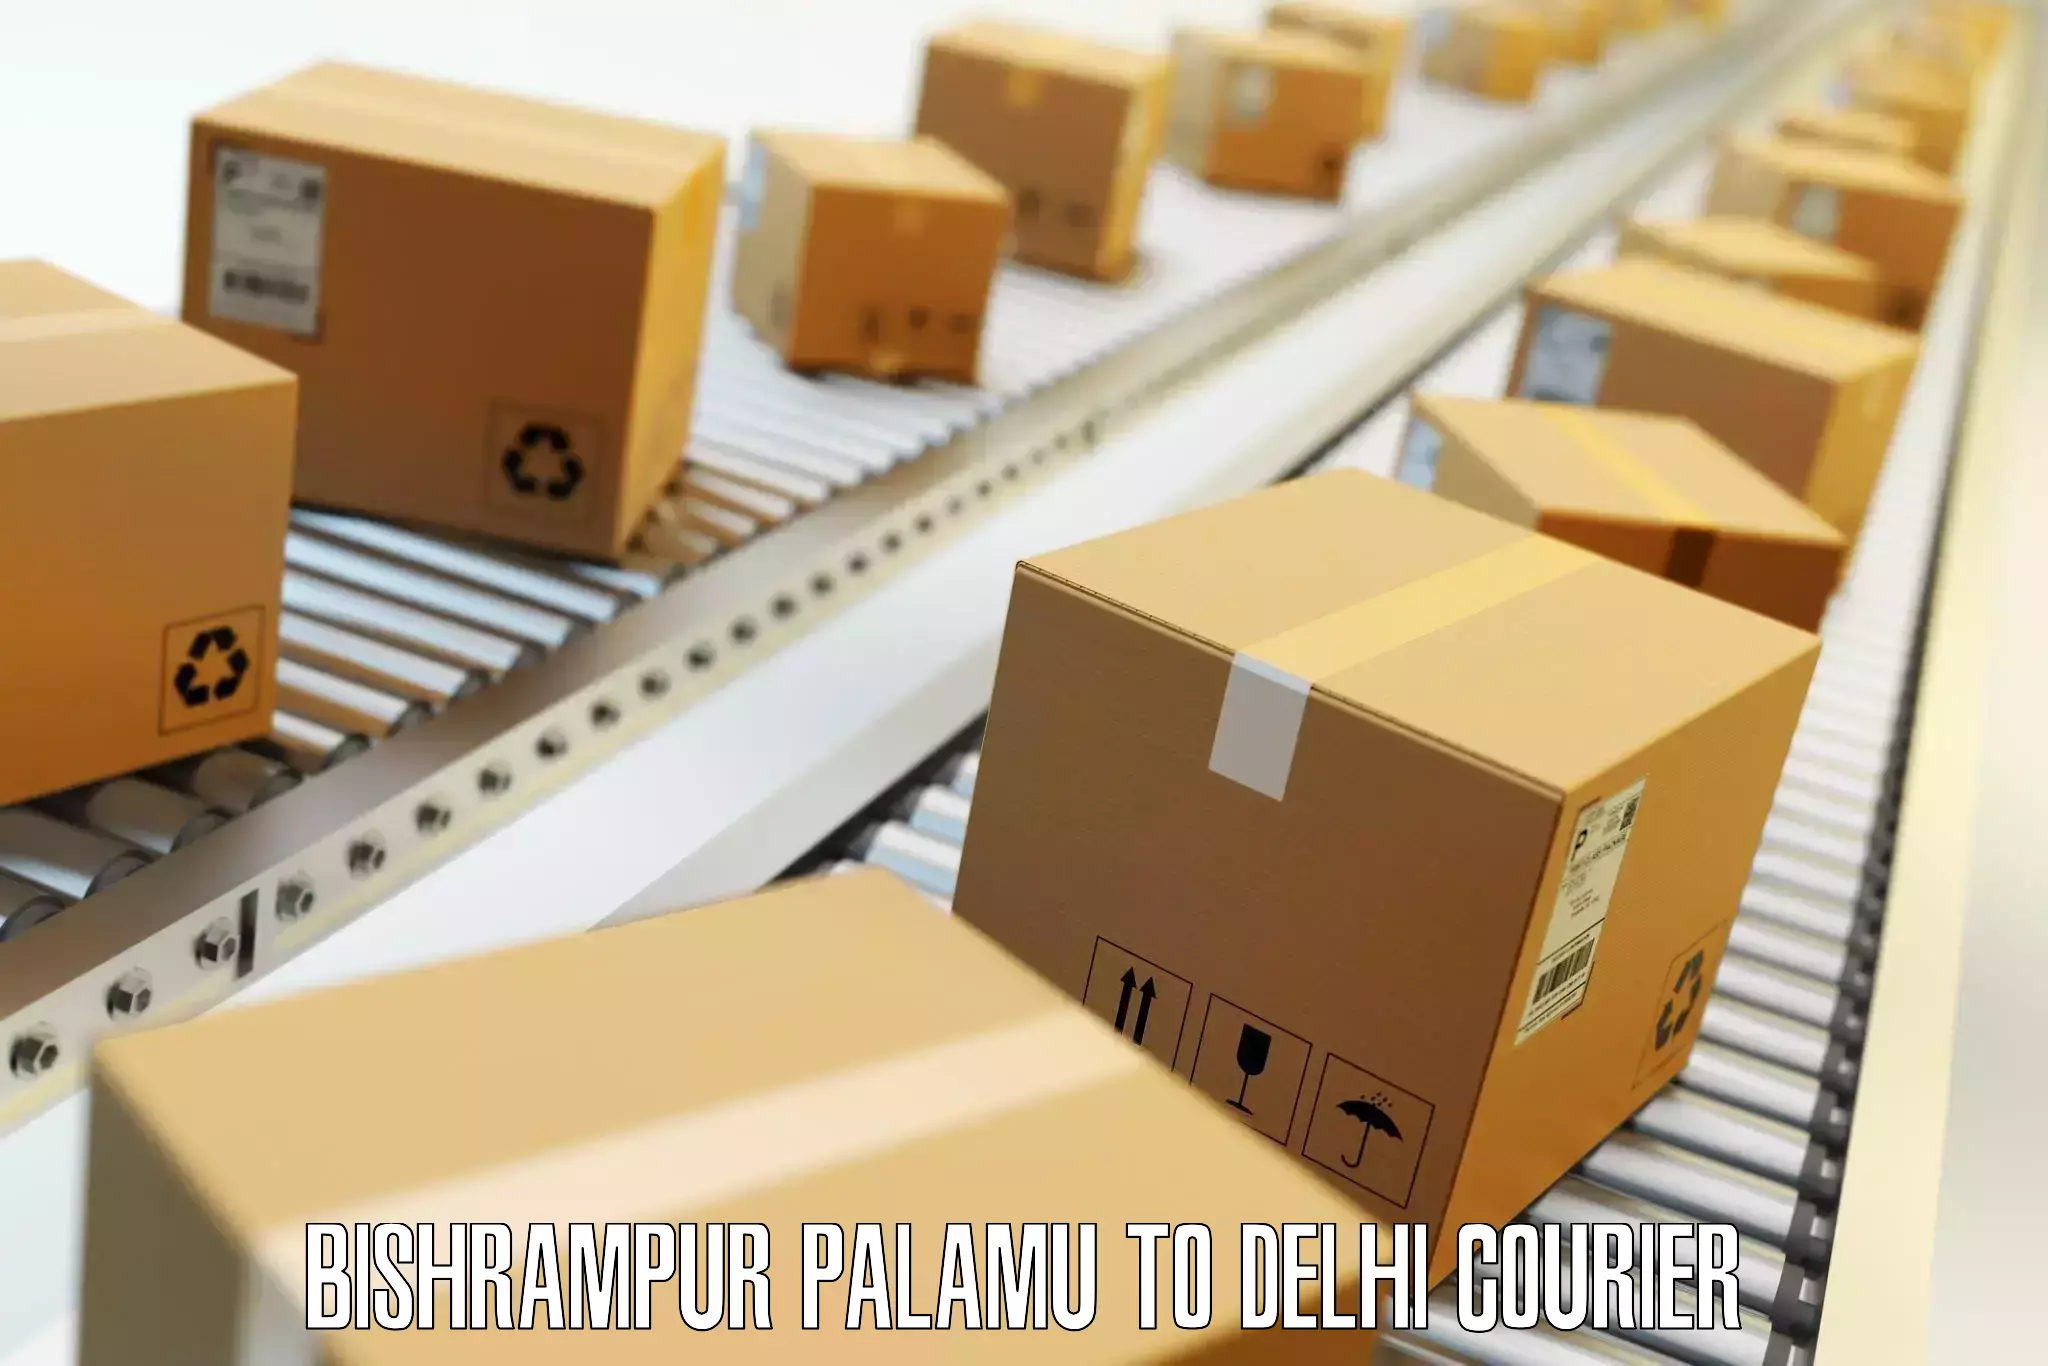 Baggage transport calculator Bishrampur Palamu to Jamia Hamdard New Delhi